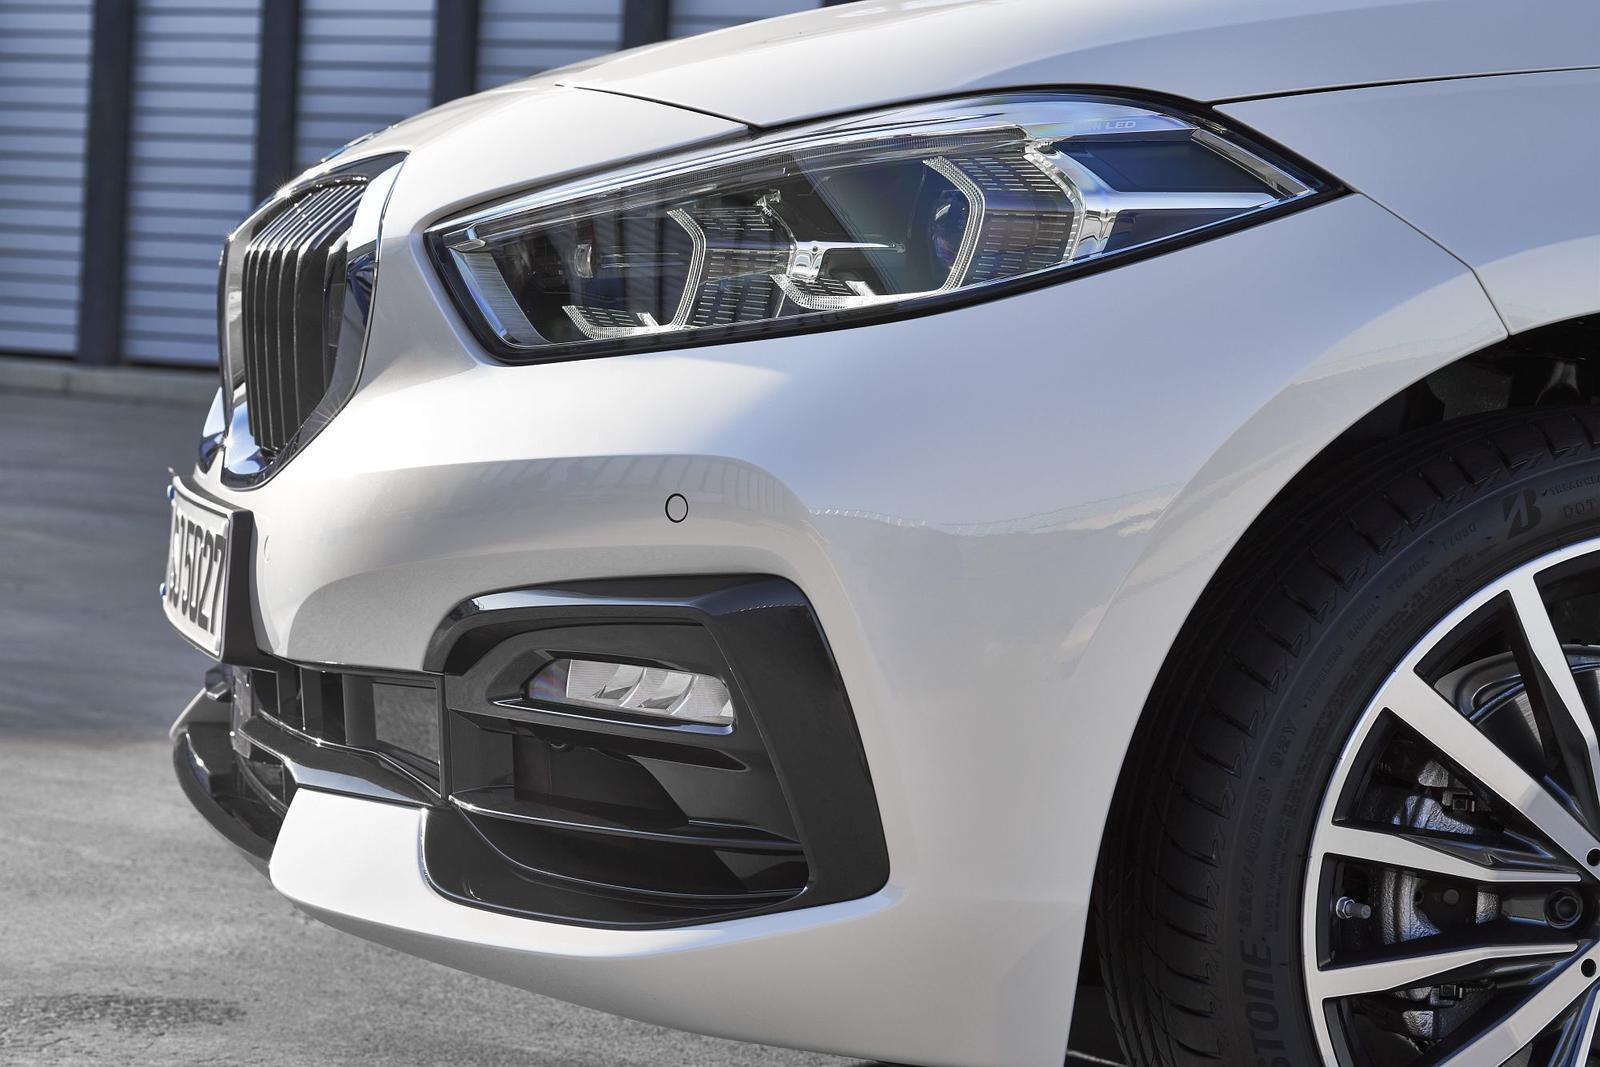 BMW Série 1 2019 oficiais _(74)